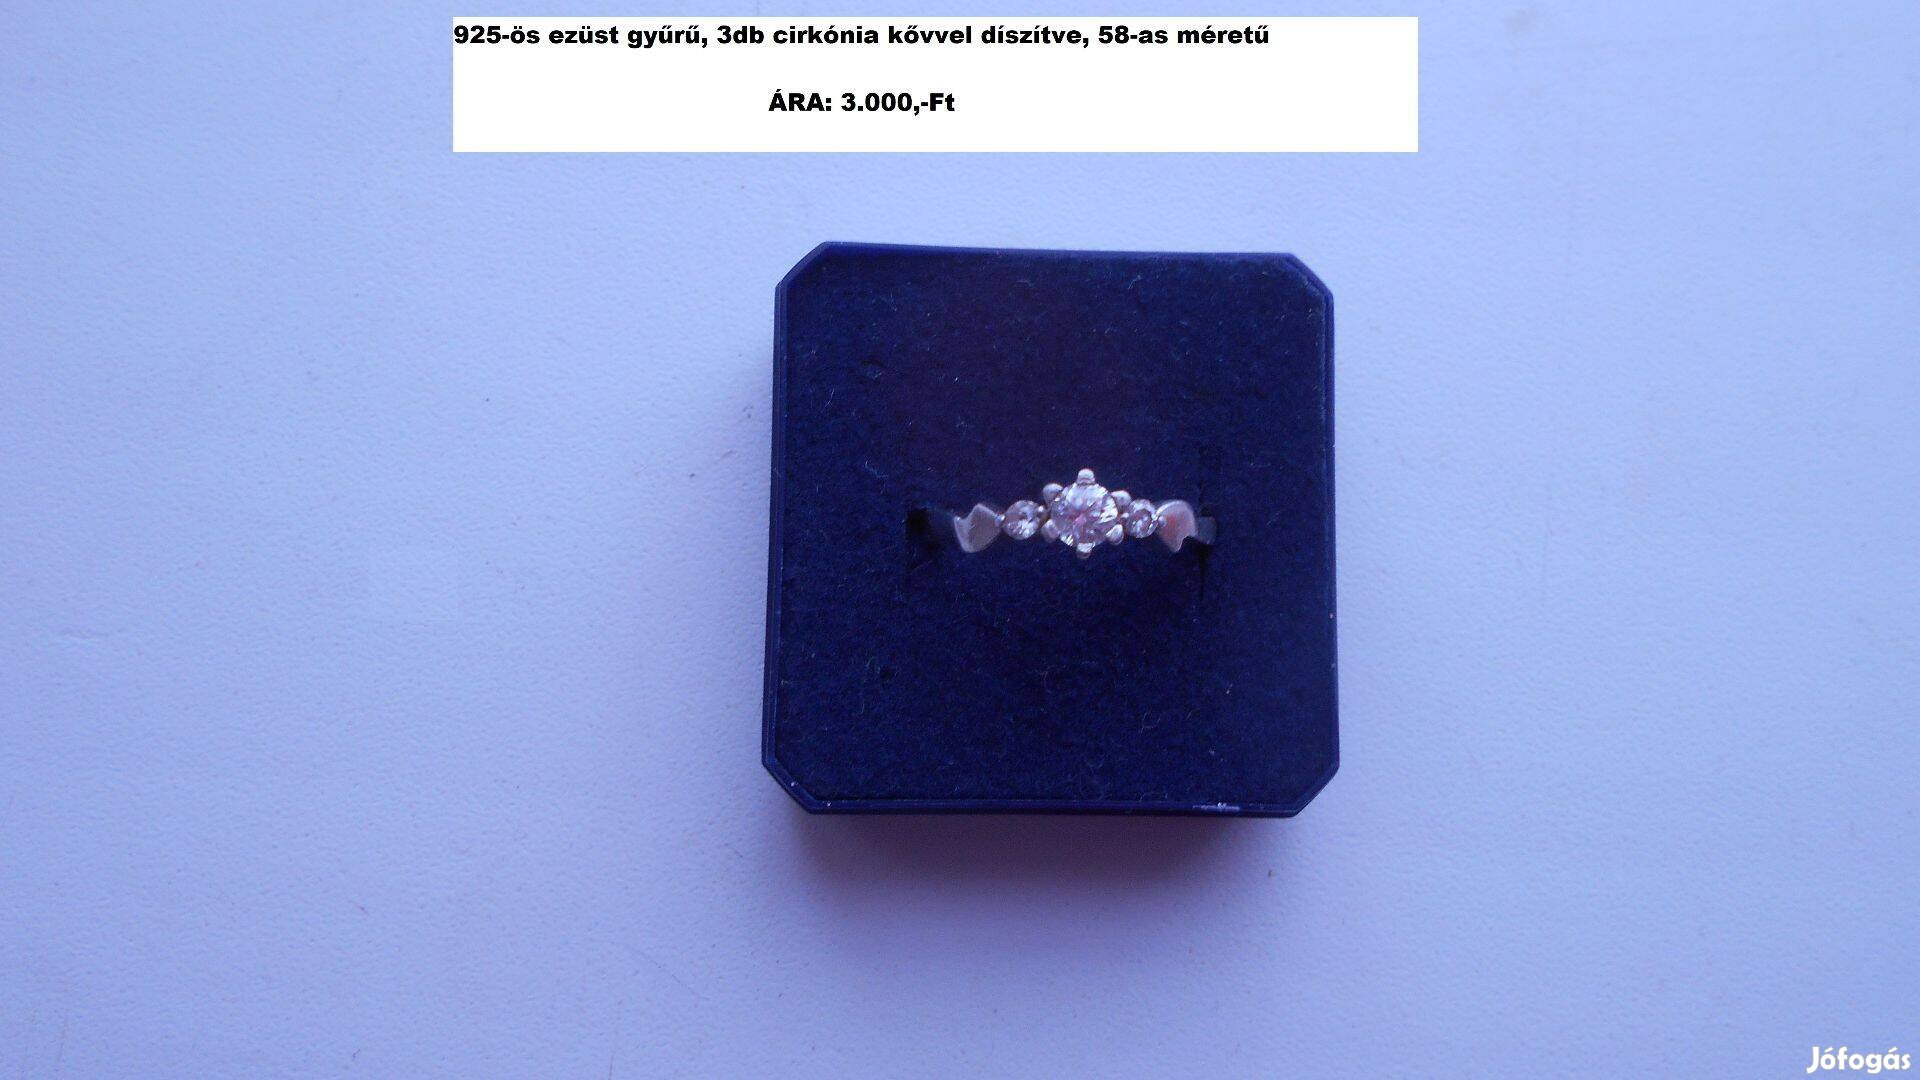 925-ös ezüst gyűrűk különböző méretben és árakban